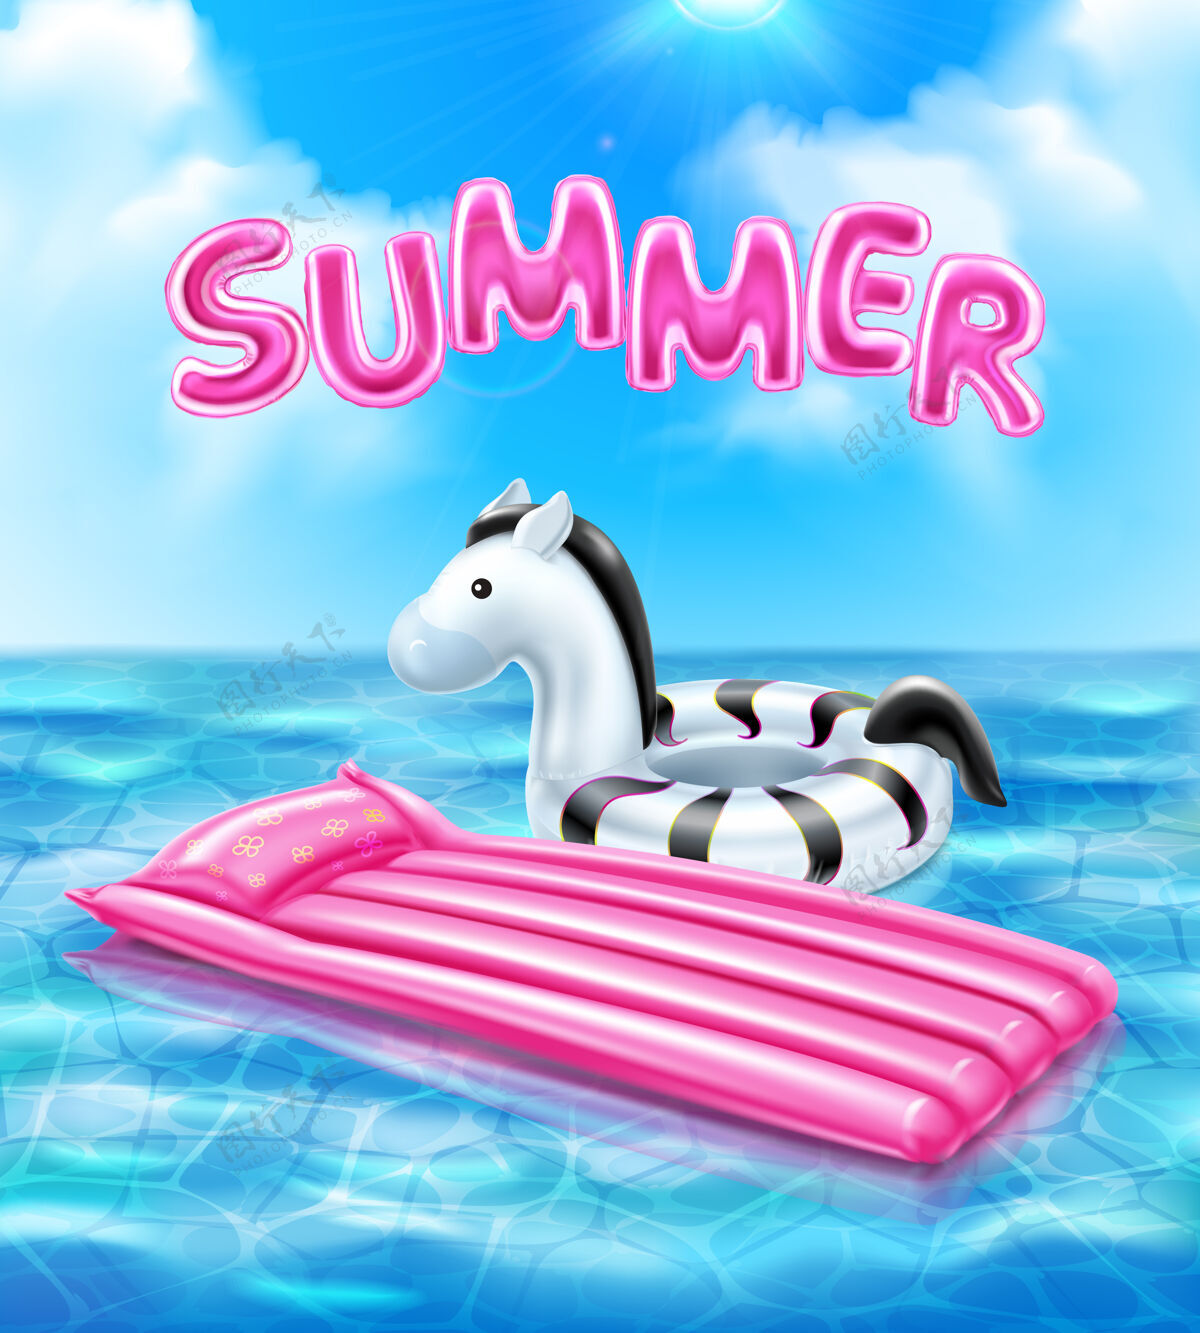 五彩缤纷夏季现实主义海报与充气游泳配件插图水夏天救命稻草